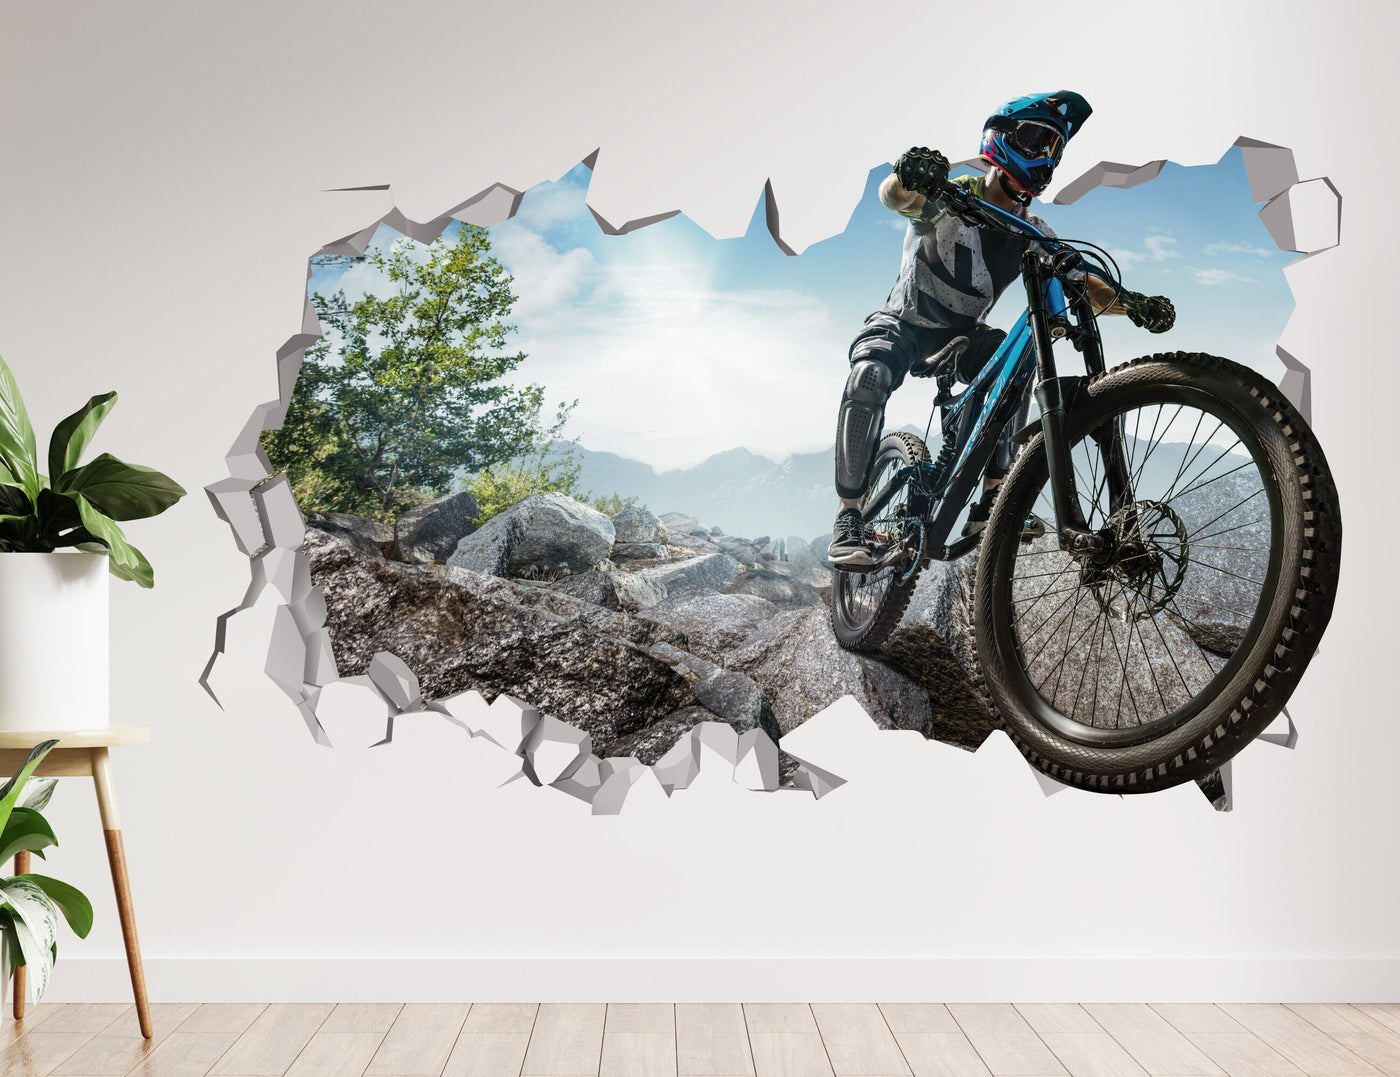 Mountain Bike Wall Decal - Bike Decal - Bike Stickers - Motorcyle Decal - Bike Art 3D Wall Decal - Mountain Bike Gift - Mountain Bike Decal